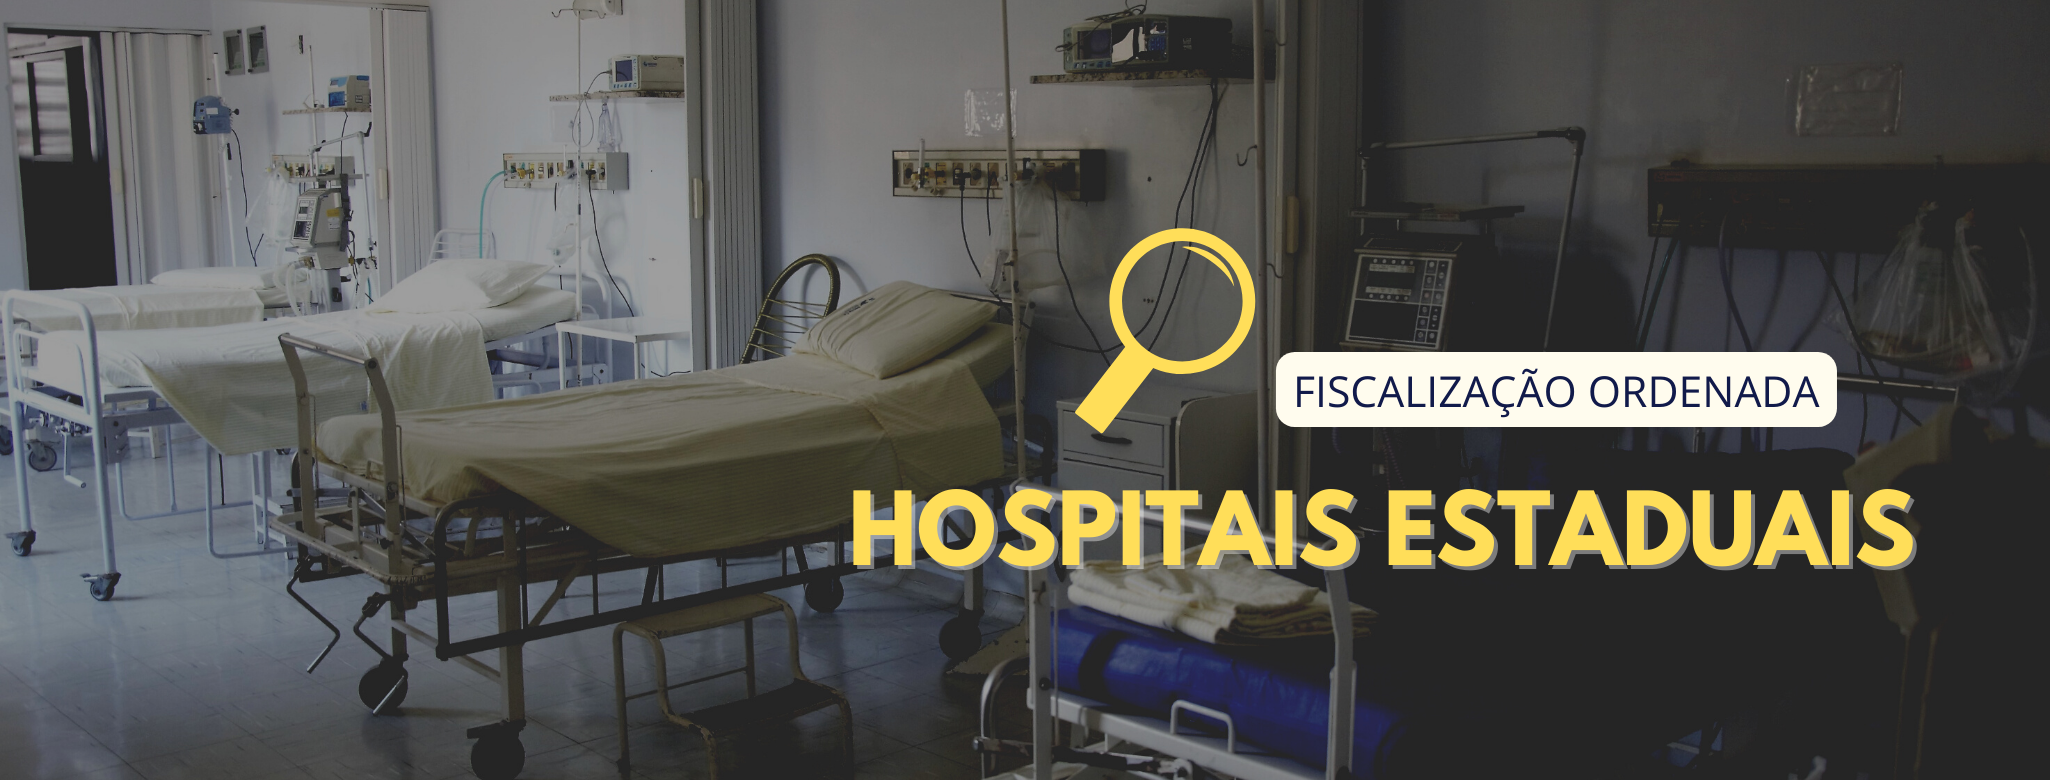 Fiscalização ordenada aponta falhas na prestação de serviço de hospitais estaduais